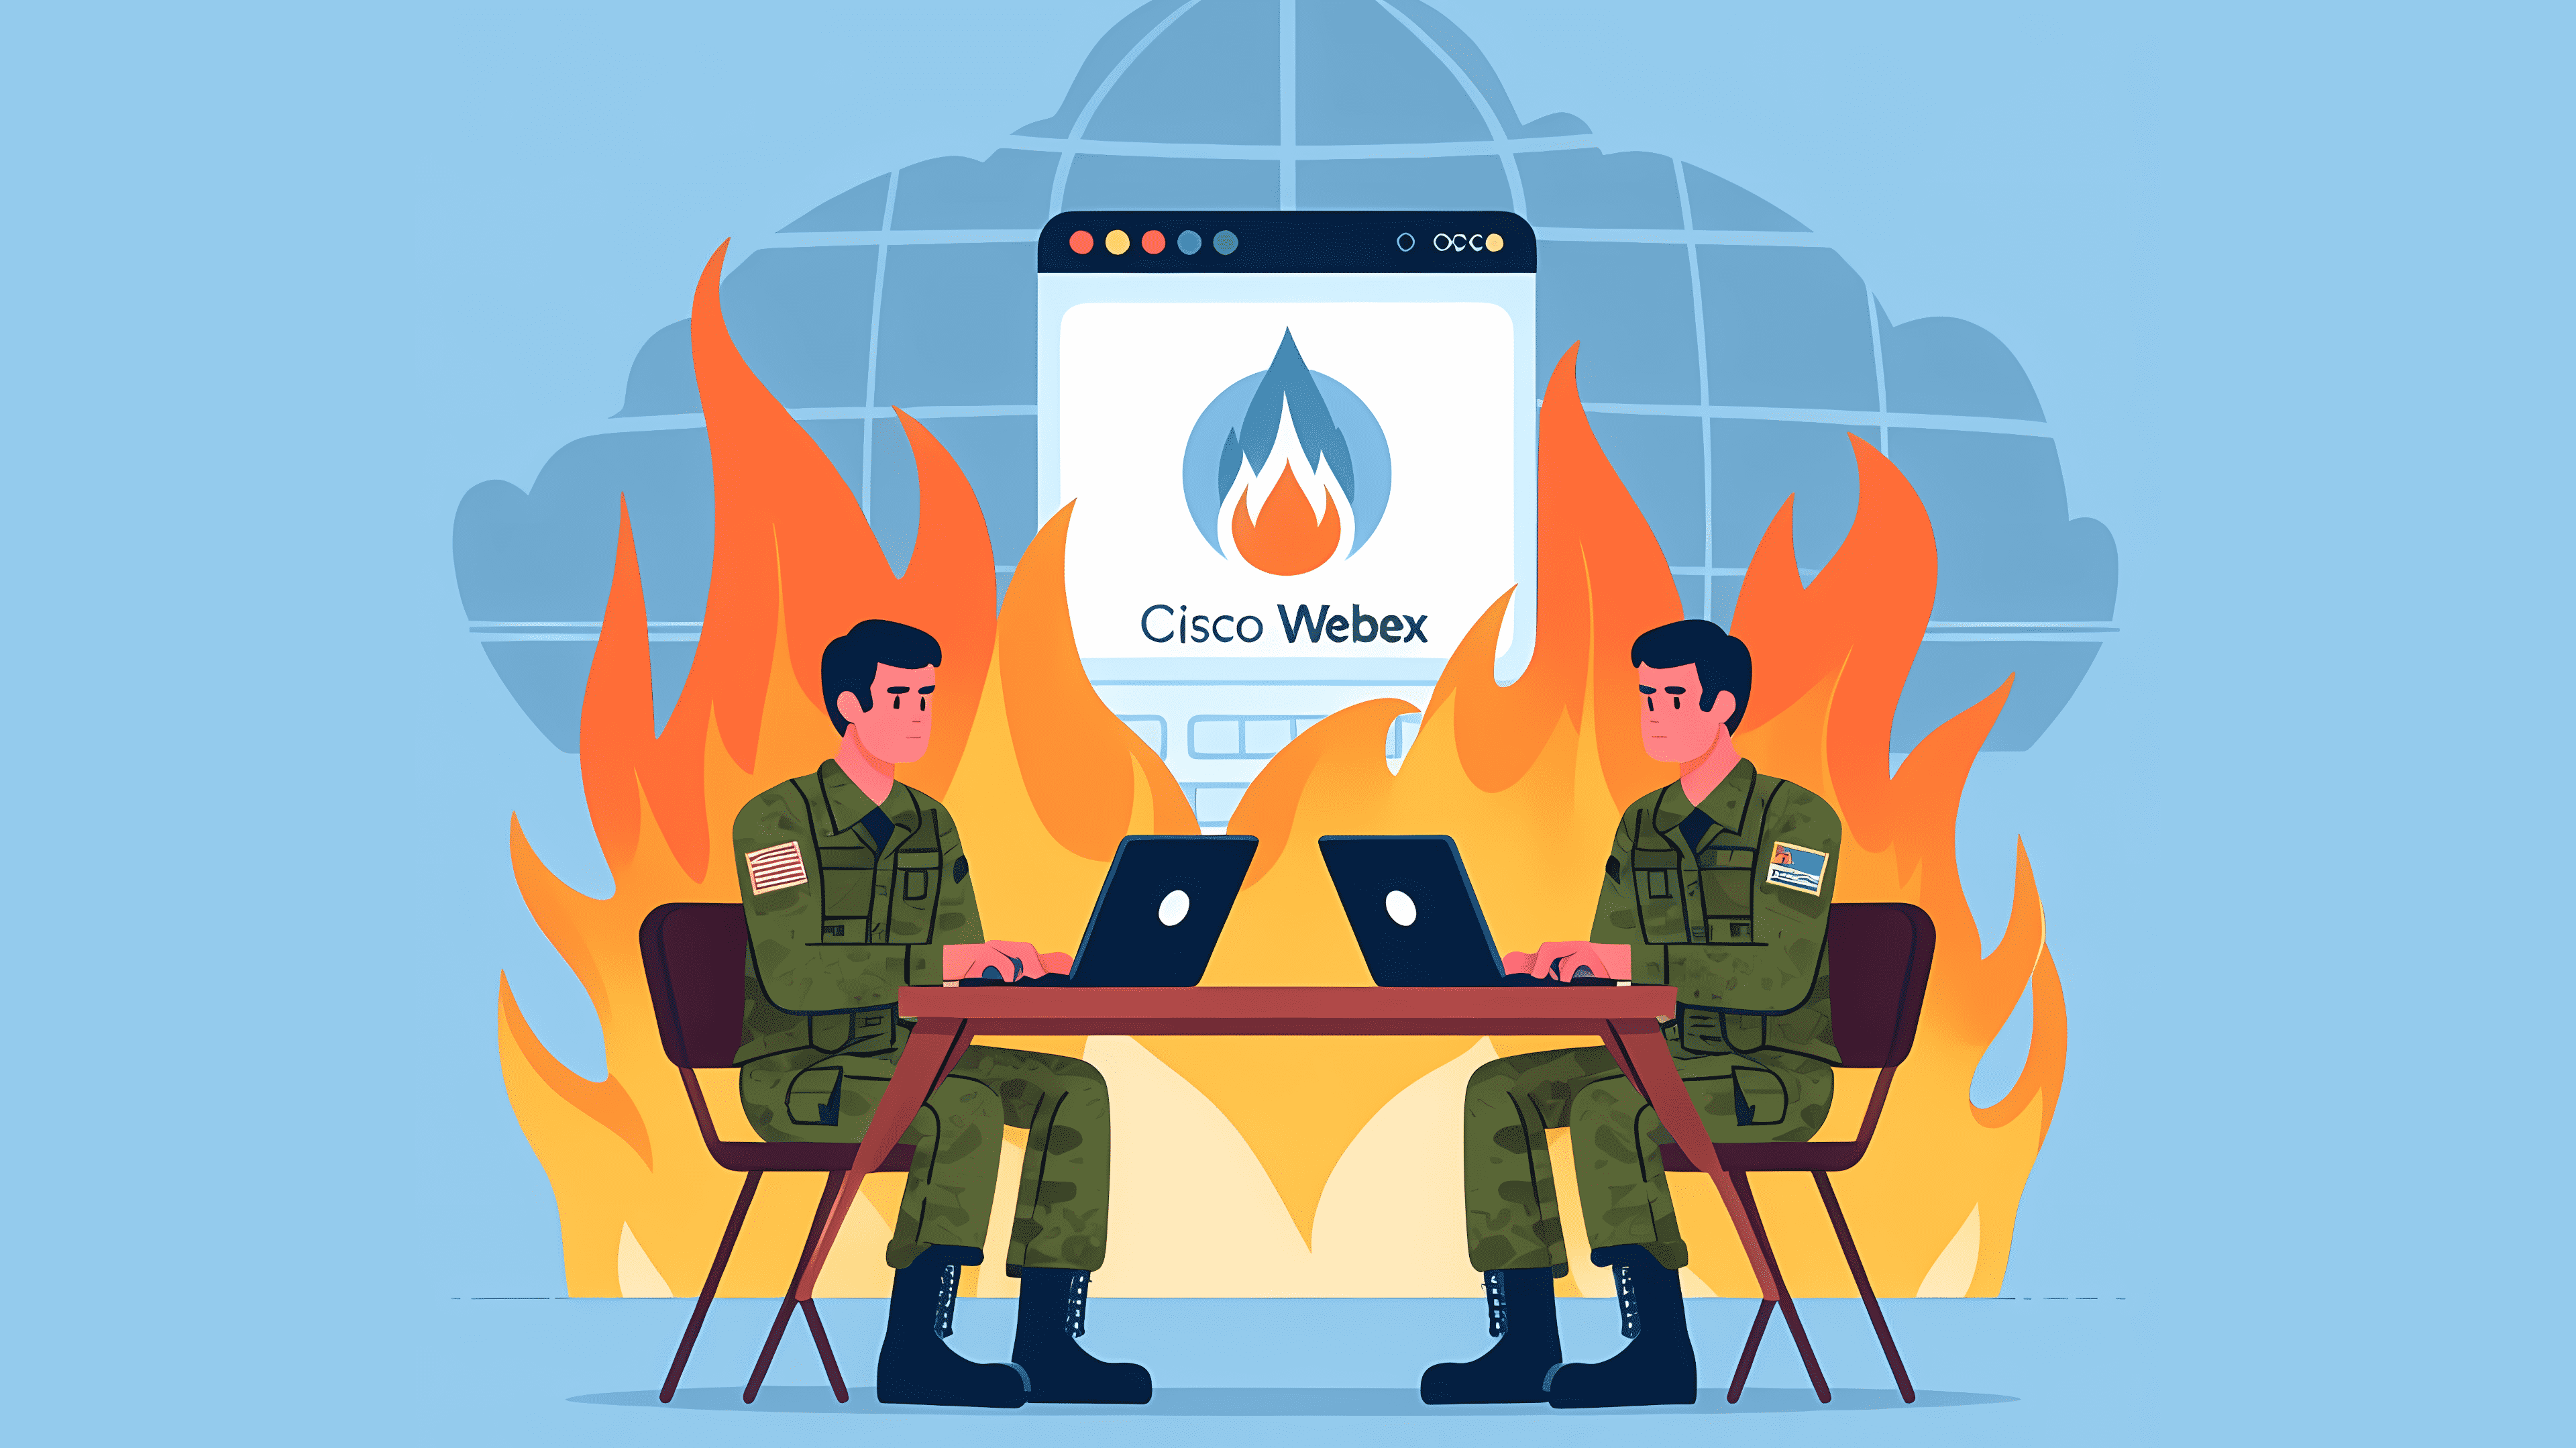 Stilisiertes Bild: Zwei Soldaten halten eine Webkonferenz ab. Im Hintergrund steht &quot;Cisco Webex&quot;